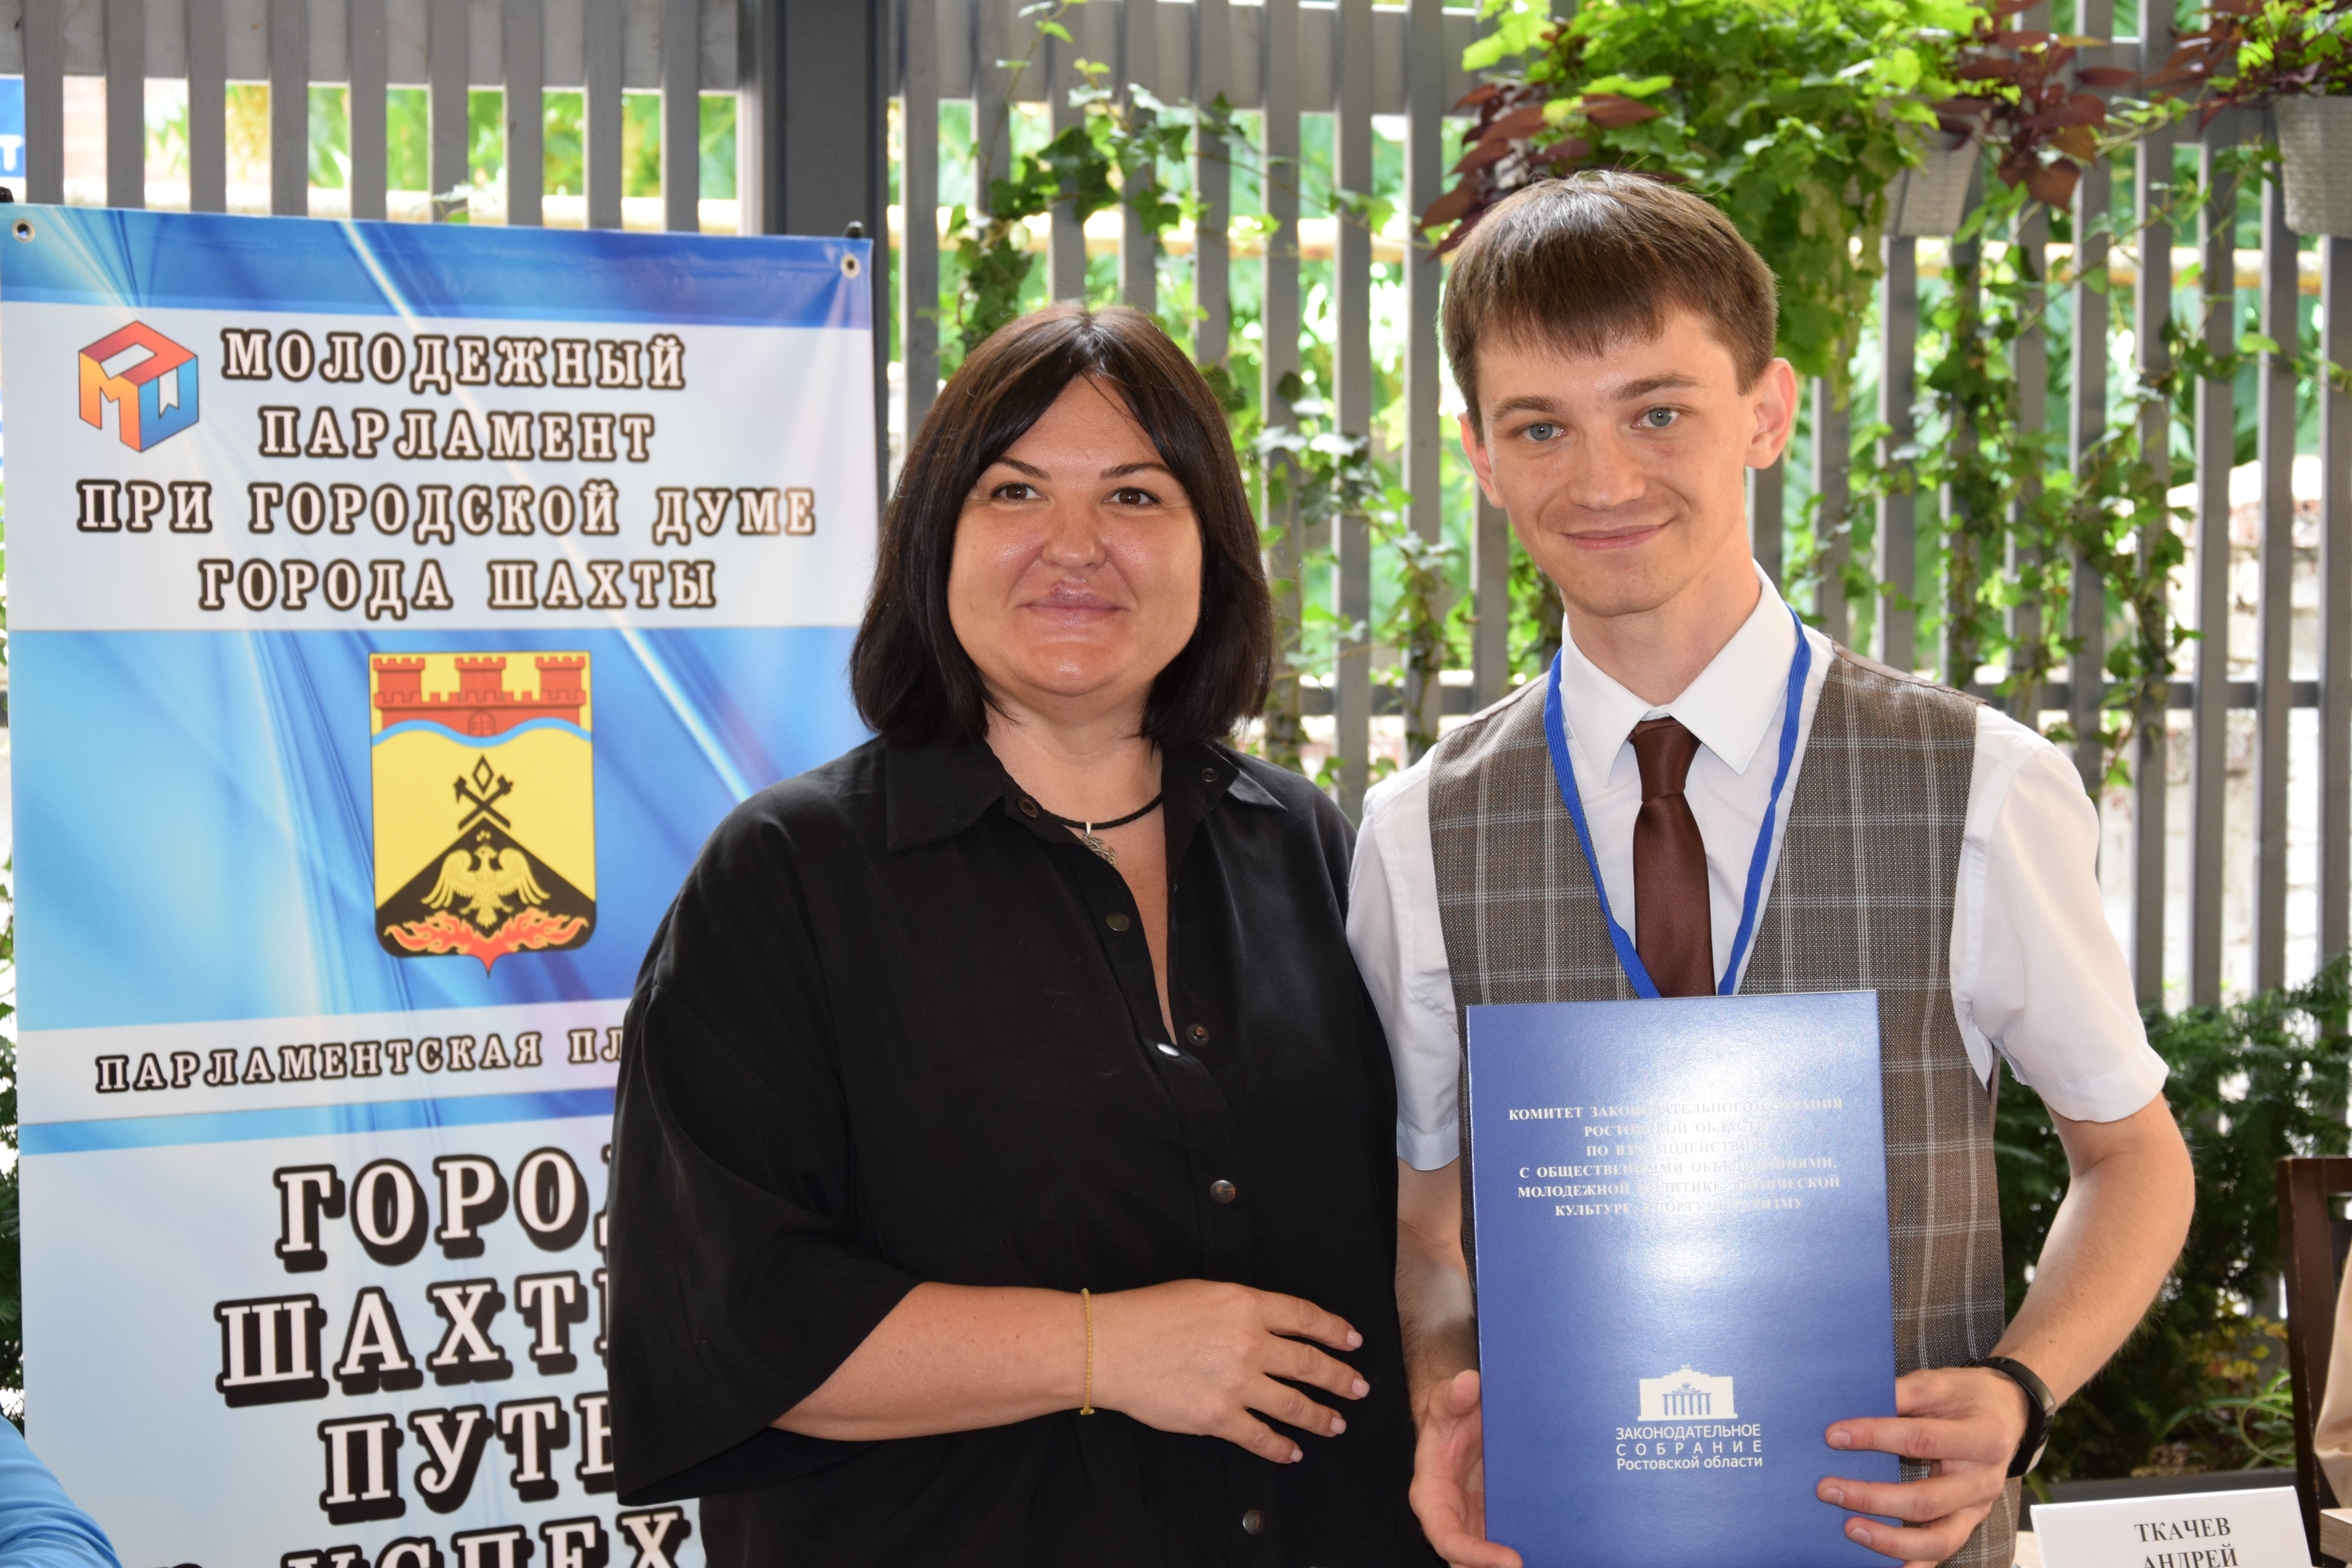 Ирина Жукова: «Задача парламентариев создавать условия для того, чтобы молодежь оставалась работать в Ростовской области»